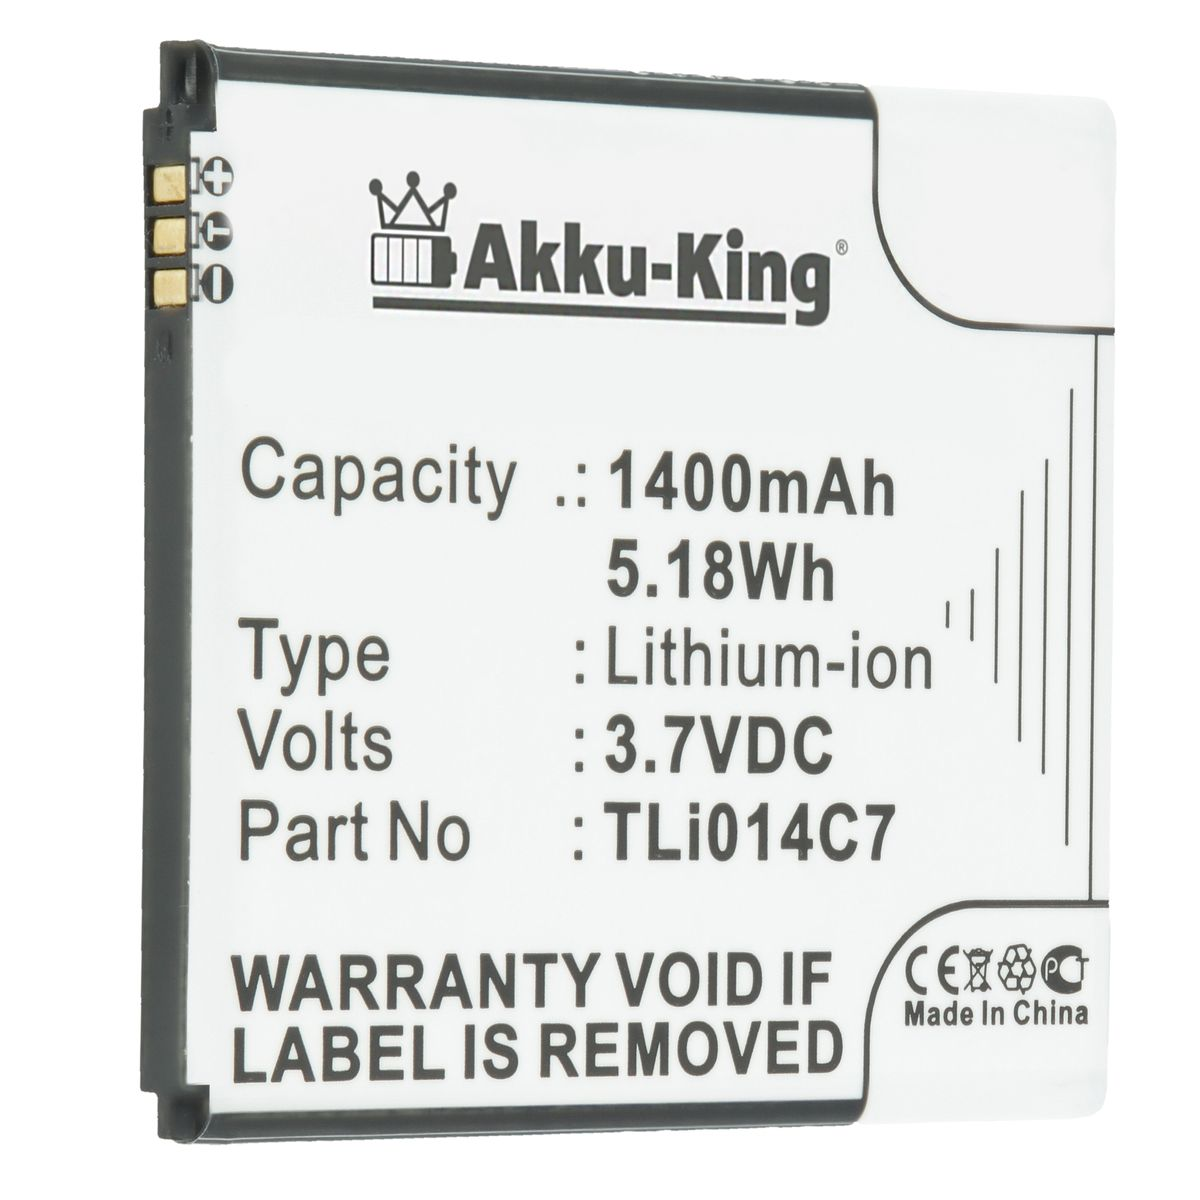 Volt, AKKU-KING TLi014C7 Handy-Akku, 3.7 Alcatel für 1400mAh Akku Li-Ion